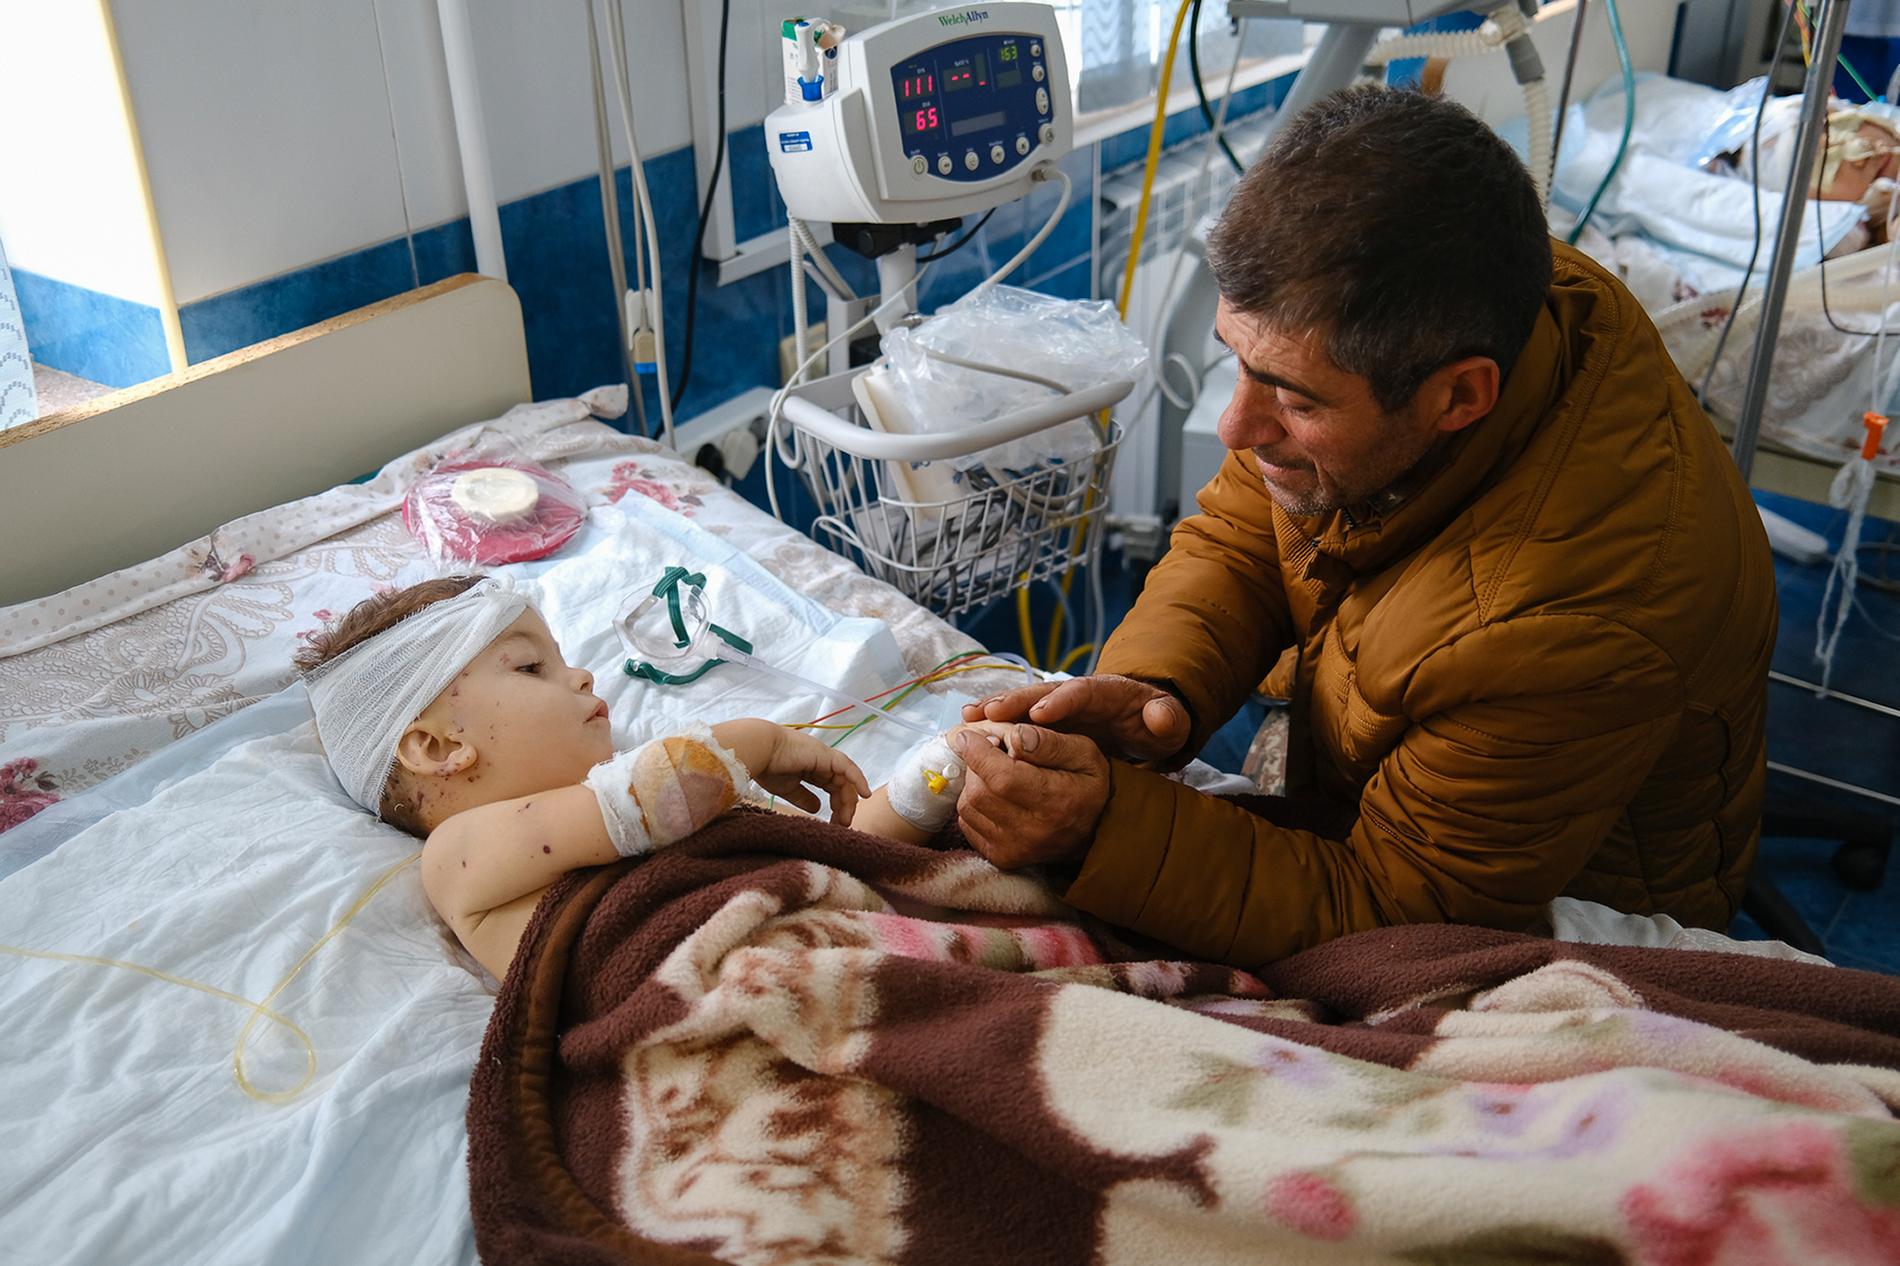 Ett barn som skadats i beskjutningen av Stepanakert vårdas på sjukhus. Bilden är tagen i måndags.